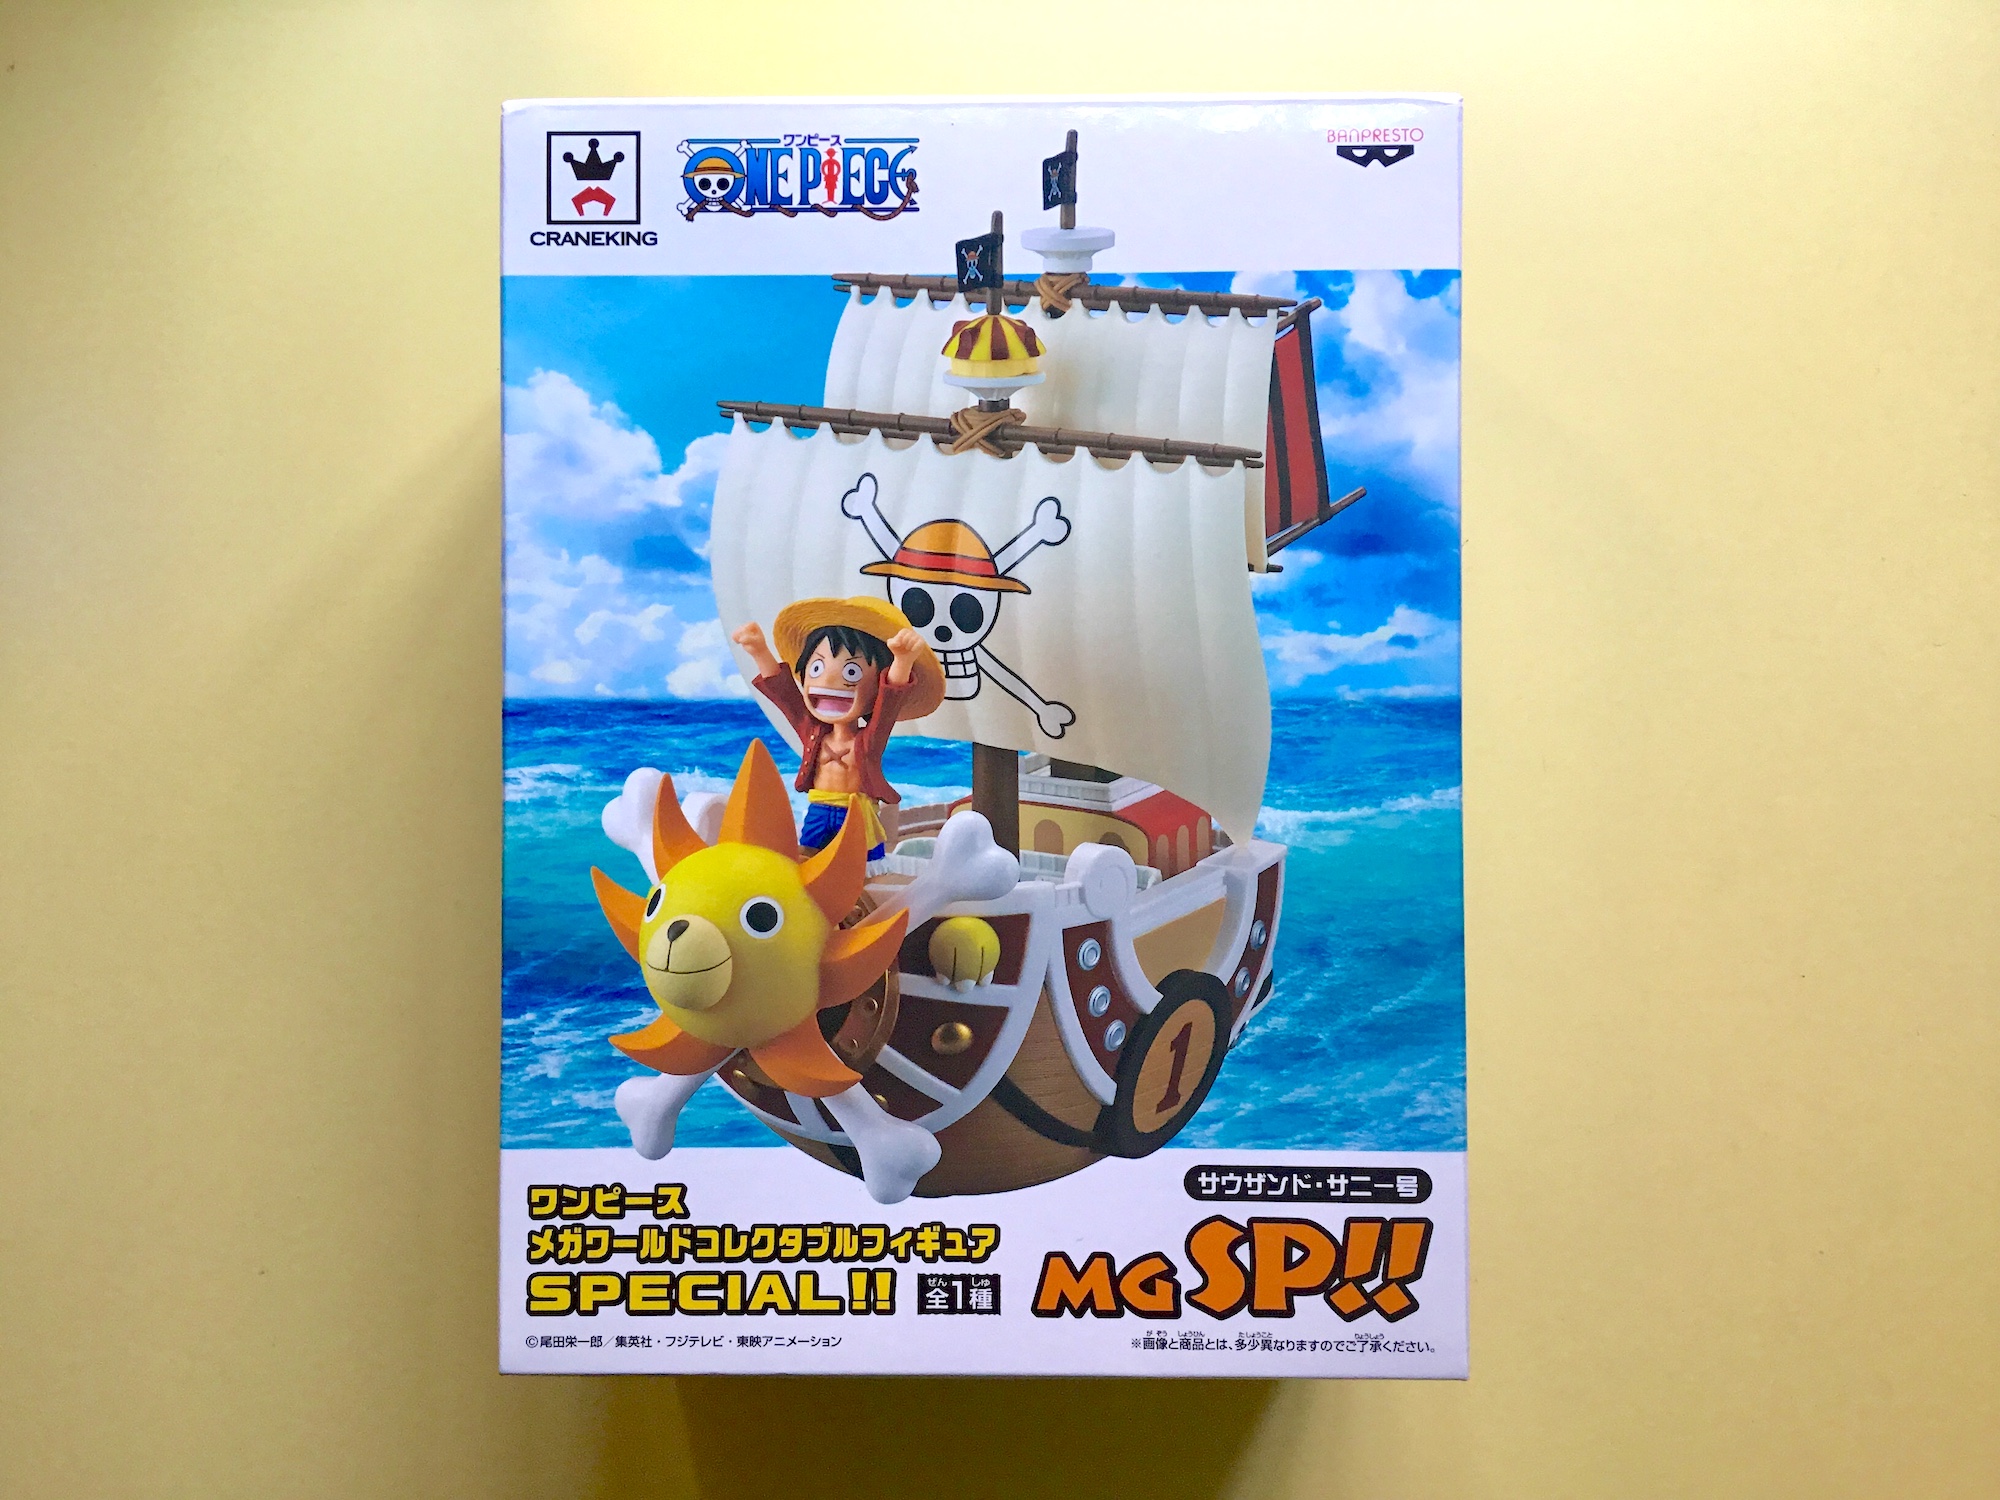 Merchandising One Piece X - Página 26 • Foro de One Piece Pirateking